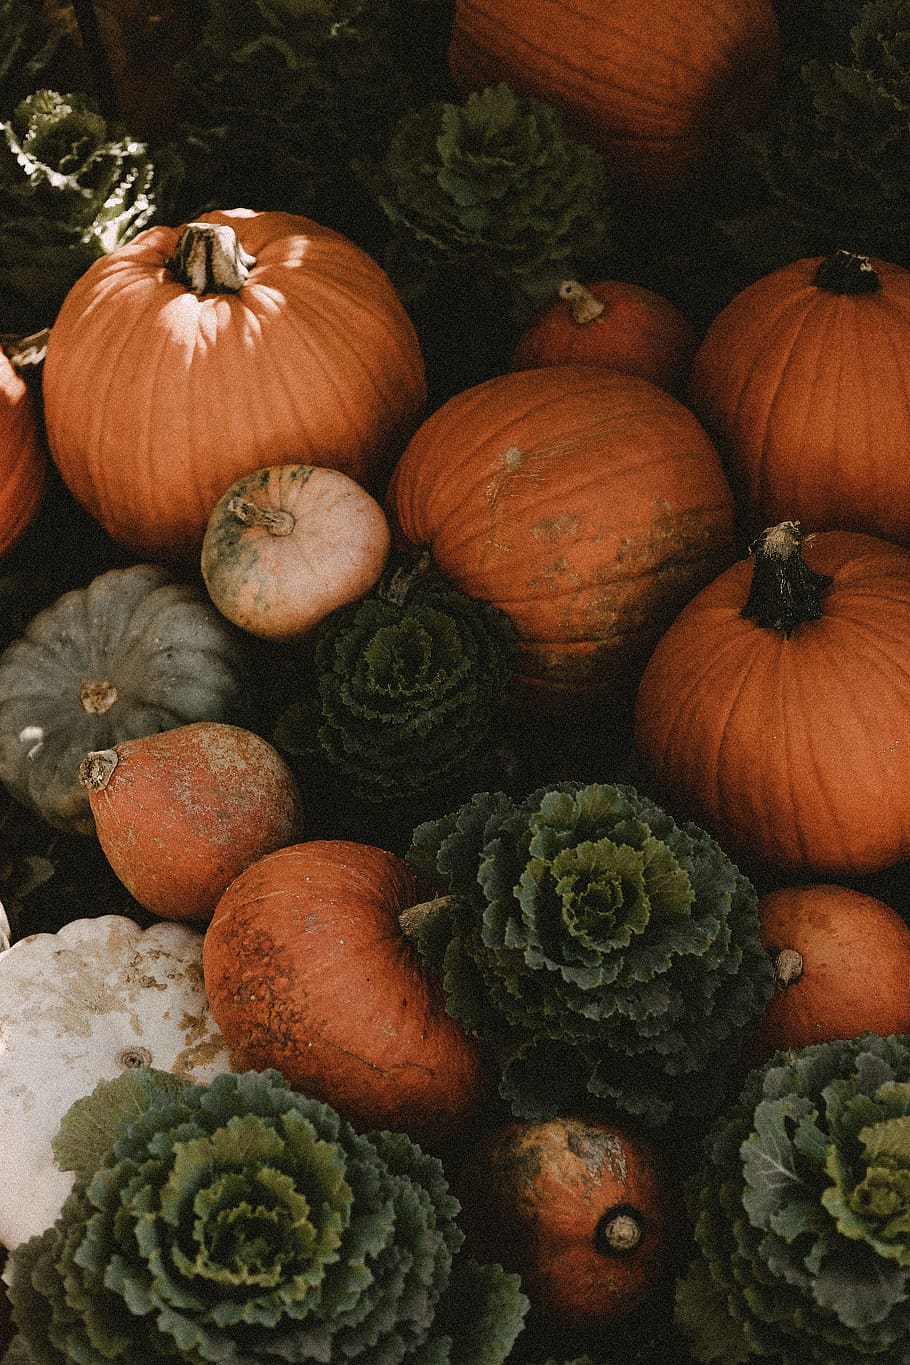 A bunch of pumpkins and cabbages - Pumpkin